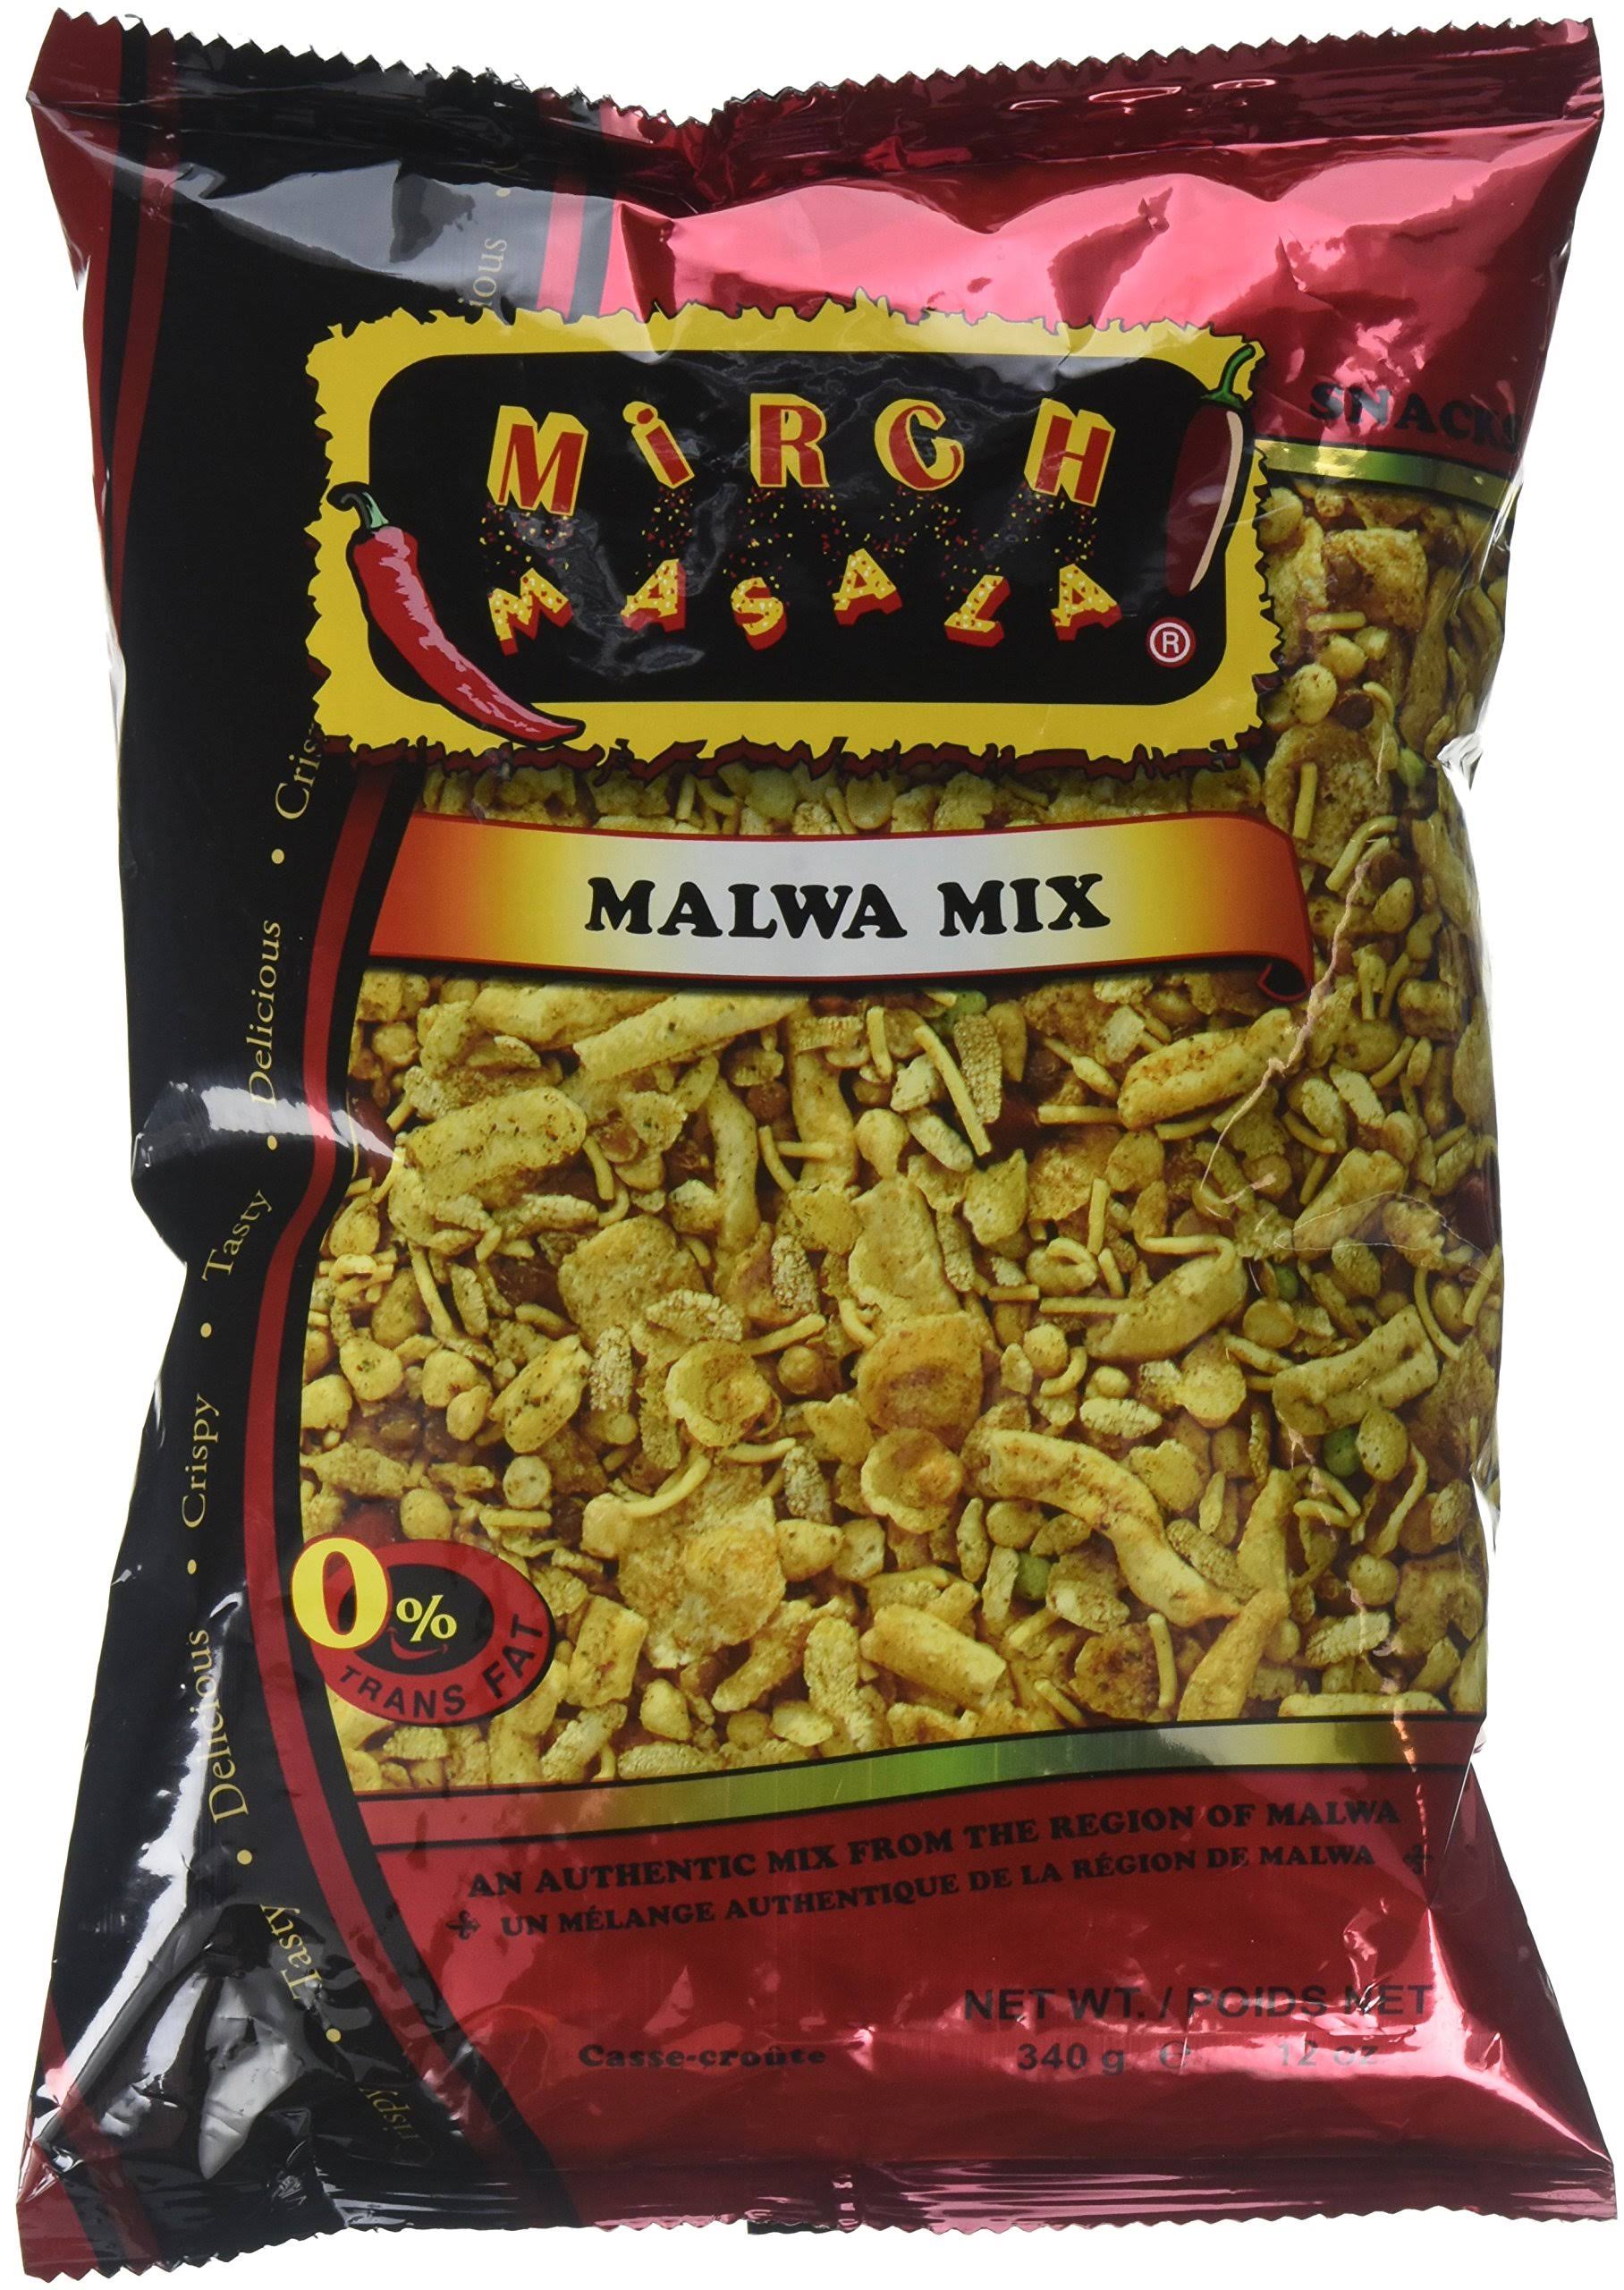 Mirch Masala Malwa Mix - 12 oz